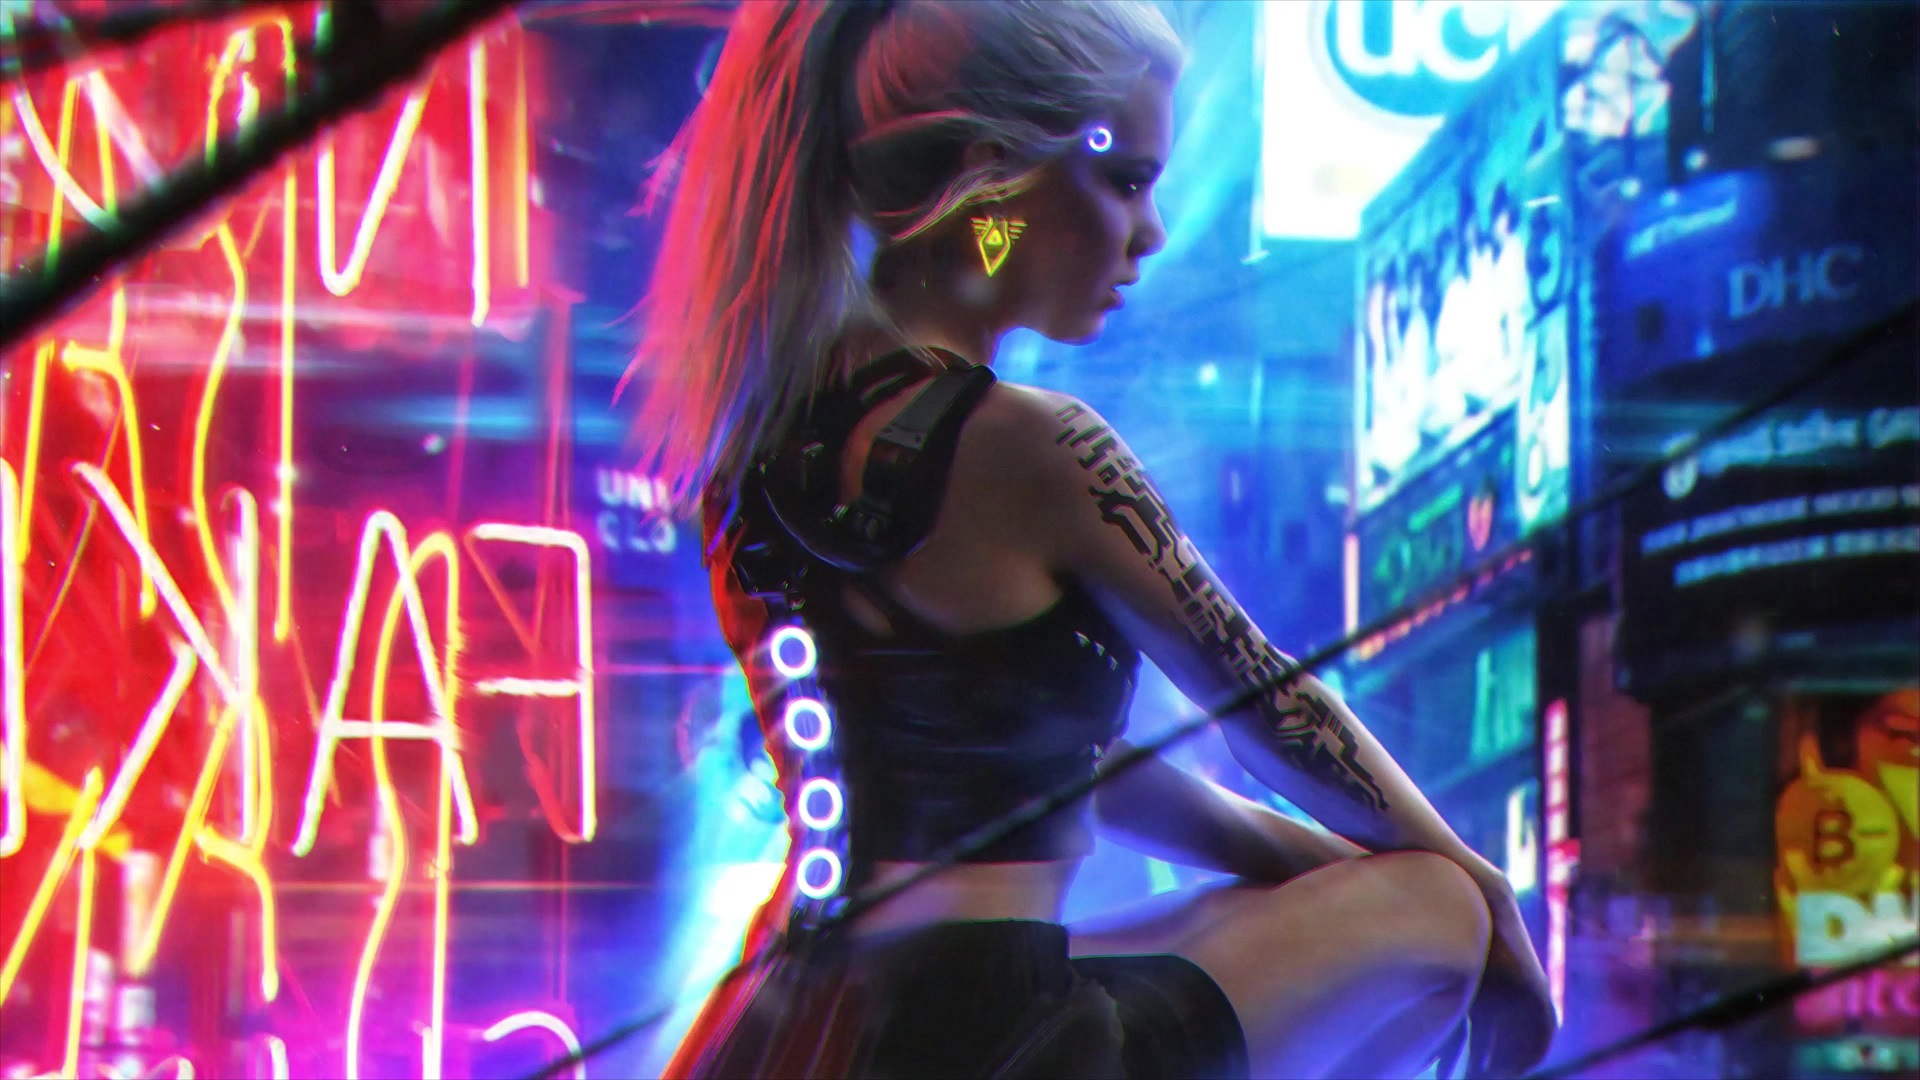 Cyberpunk Girl Live Wallpaper